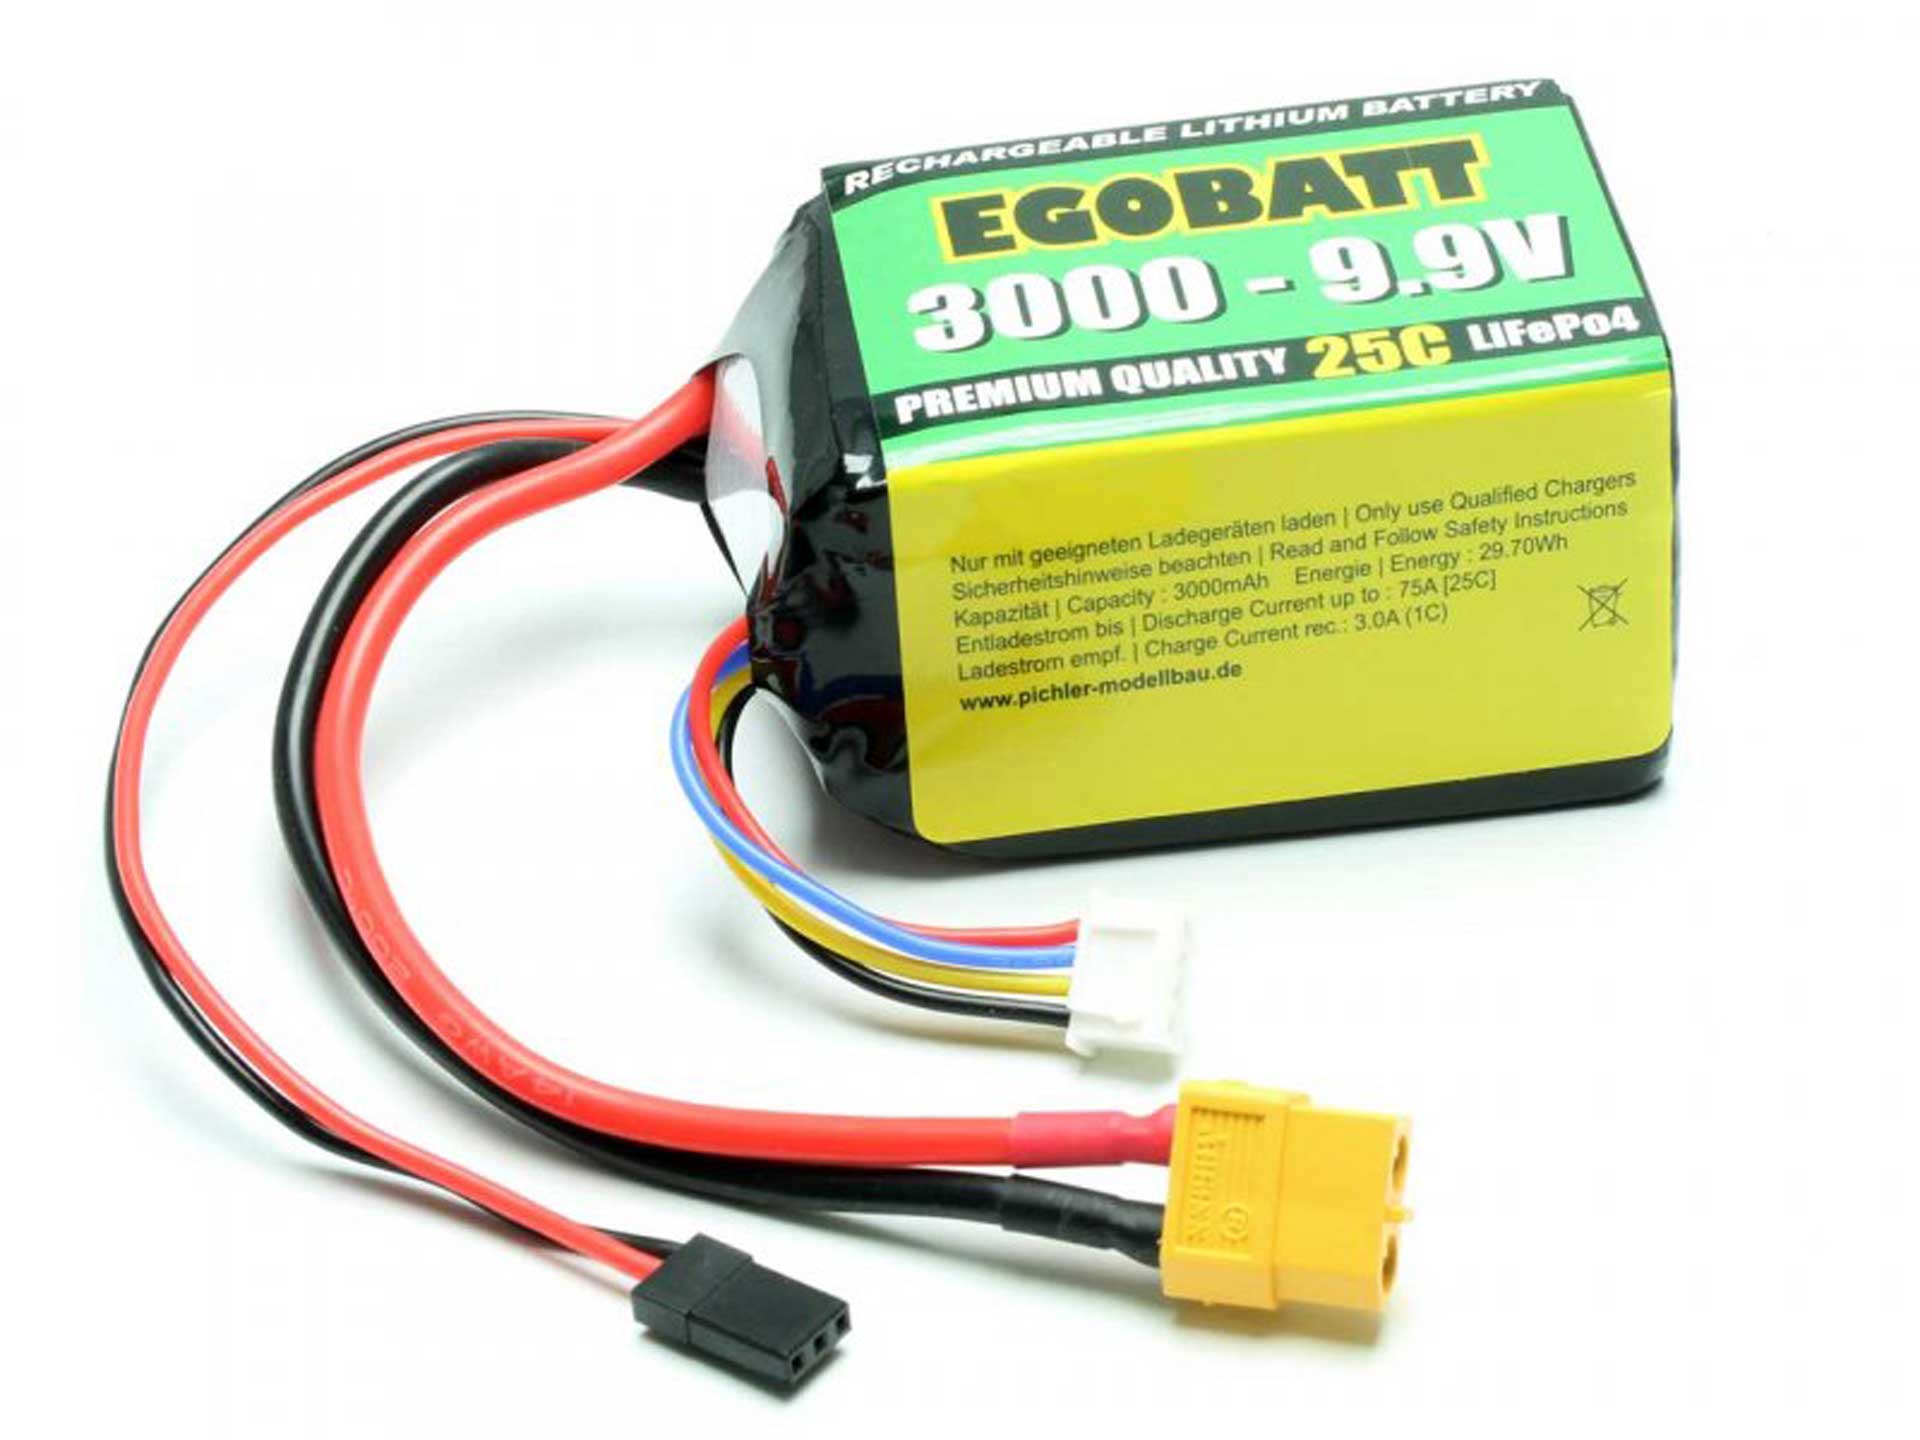 Pichler Batterie LiFe EGOBATT 3000 - 9.9V (25C)